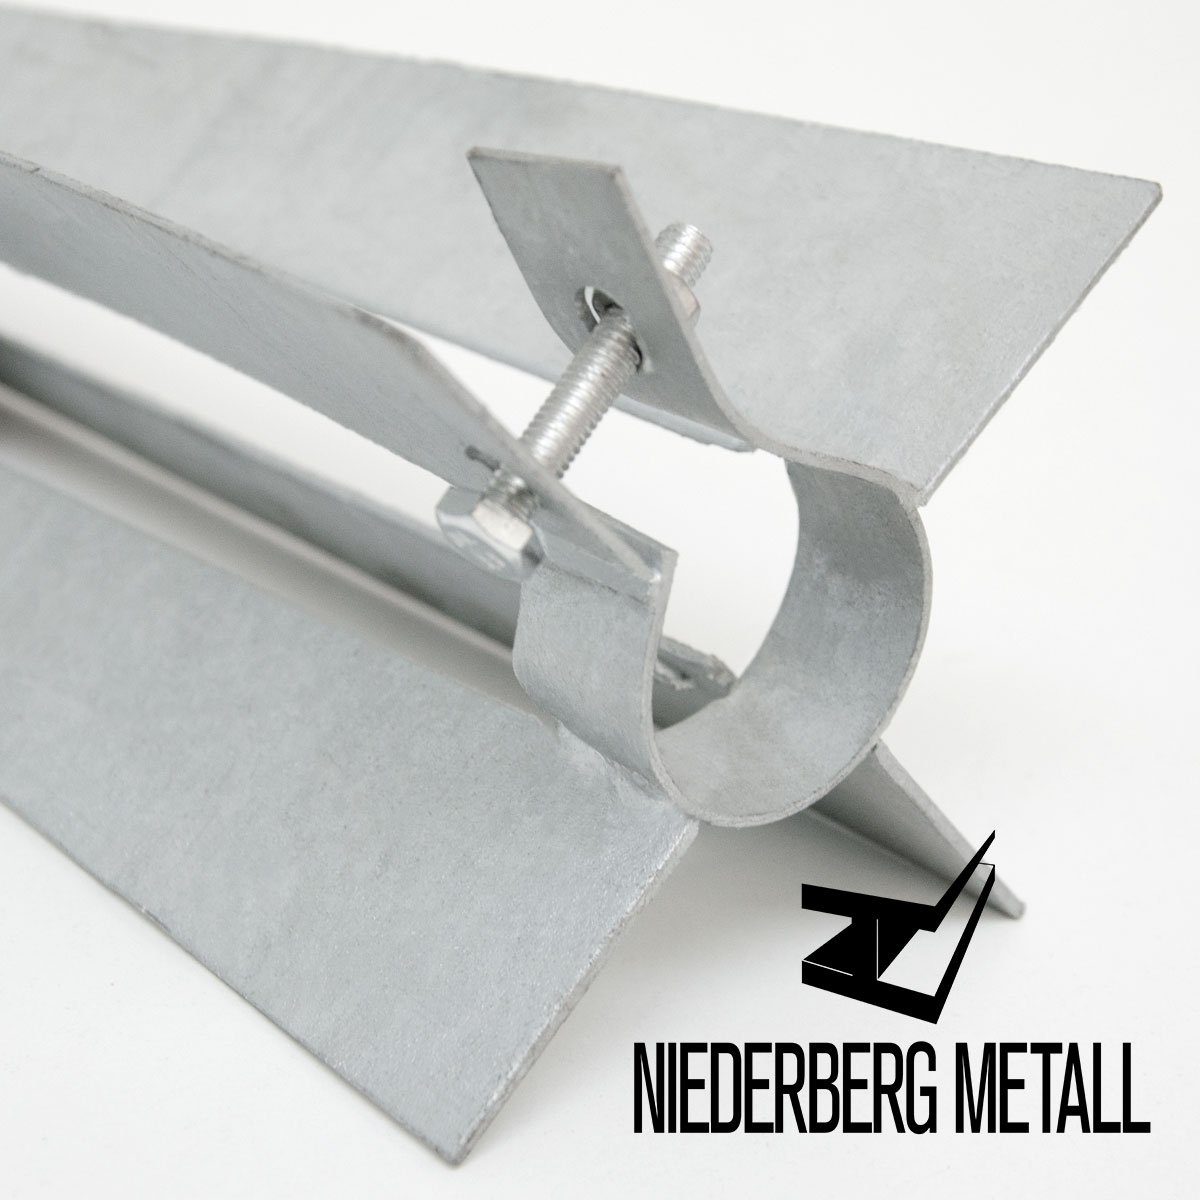 Einschlaghülse, Klemmschelle Bodenhülse Metall Einschlagbodenhülse Metall Bodenhülse 50cm mit Ø36mm Niederberg